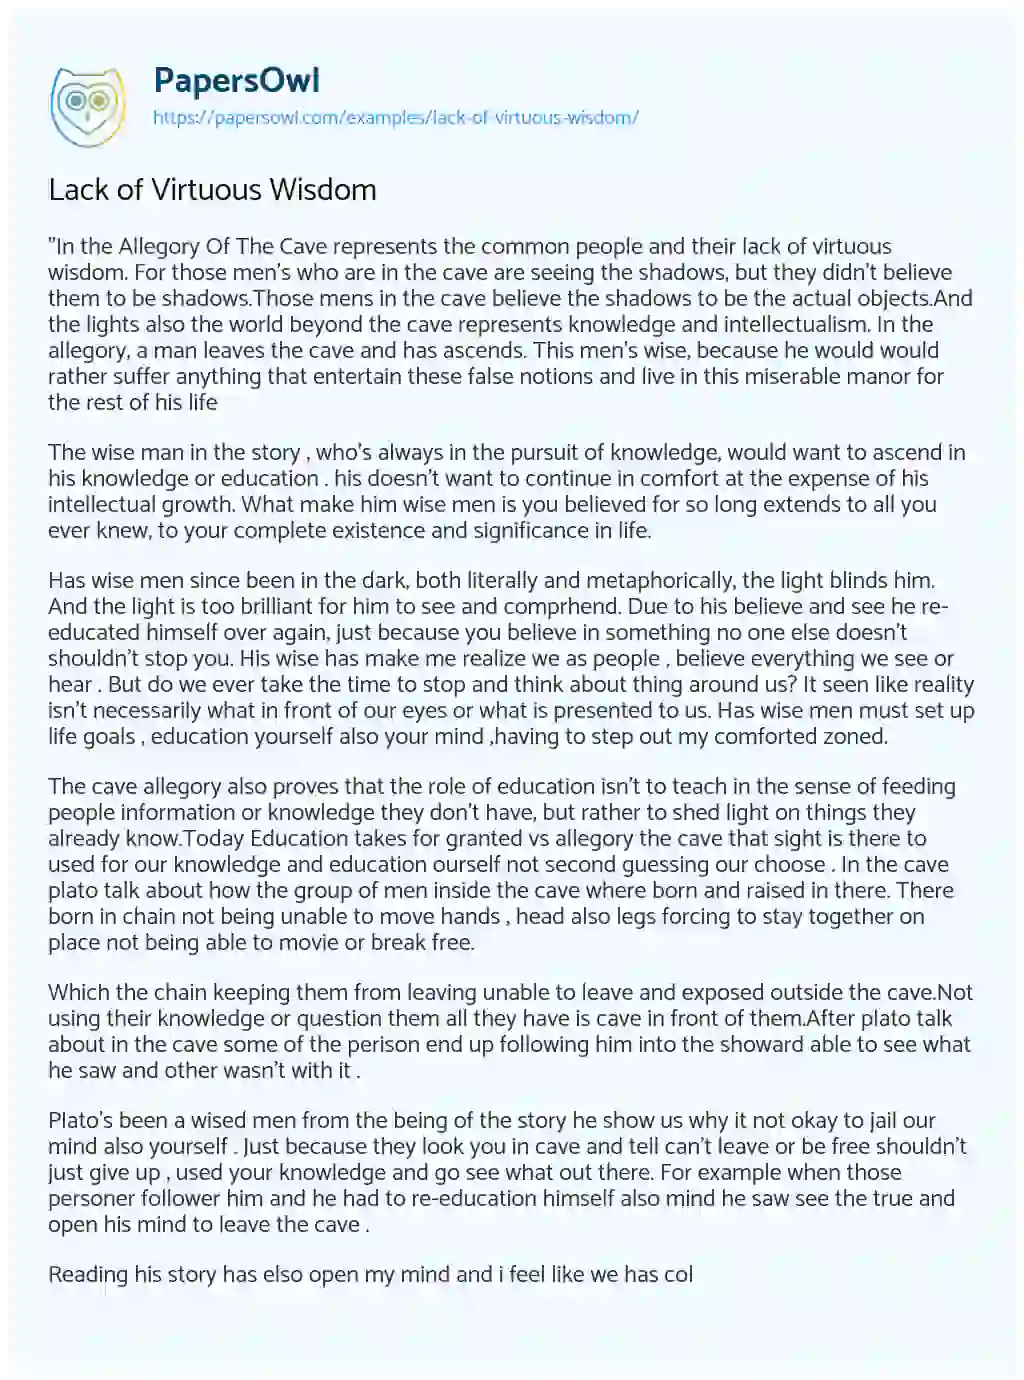 Lack of Virtuous Wisdom essay